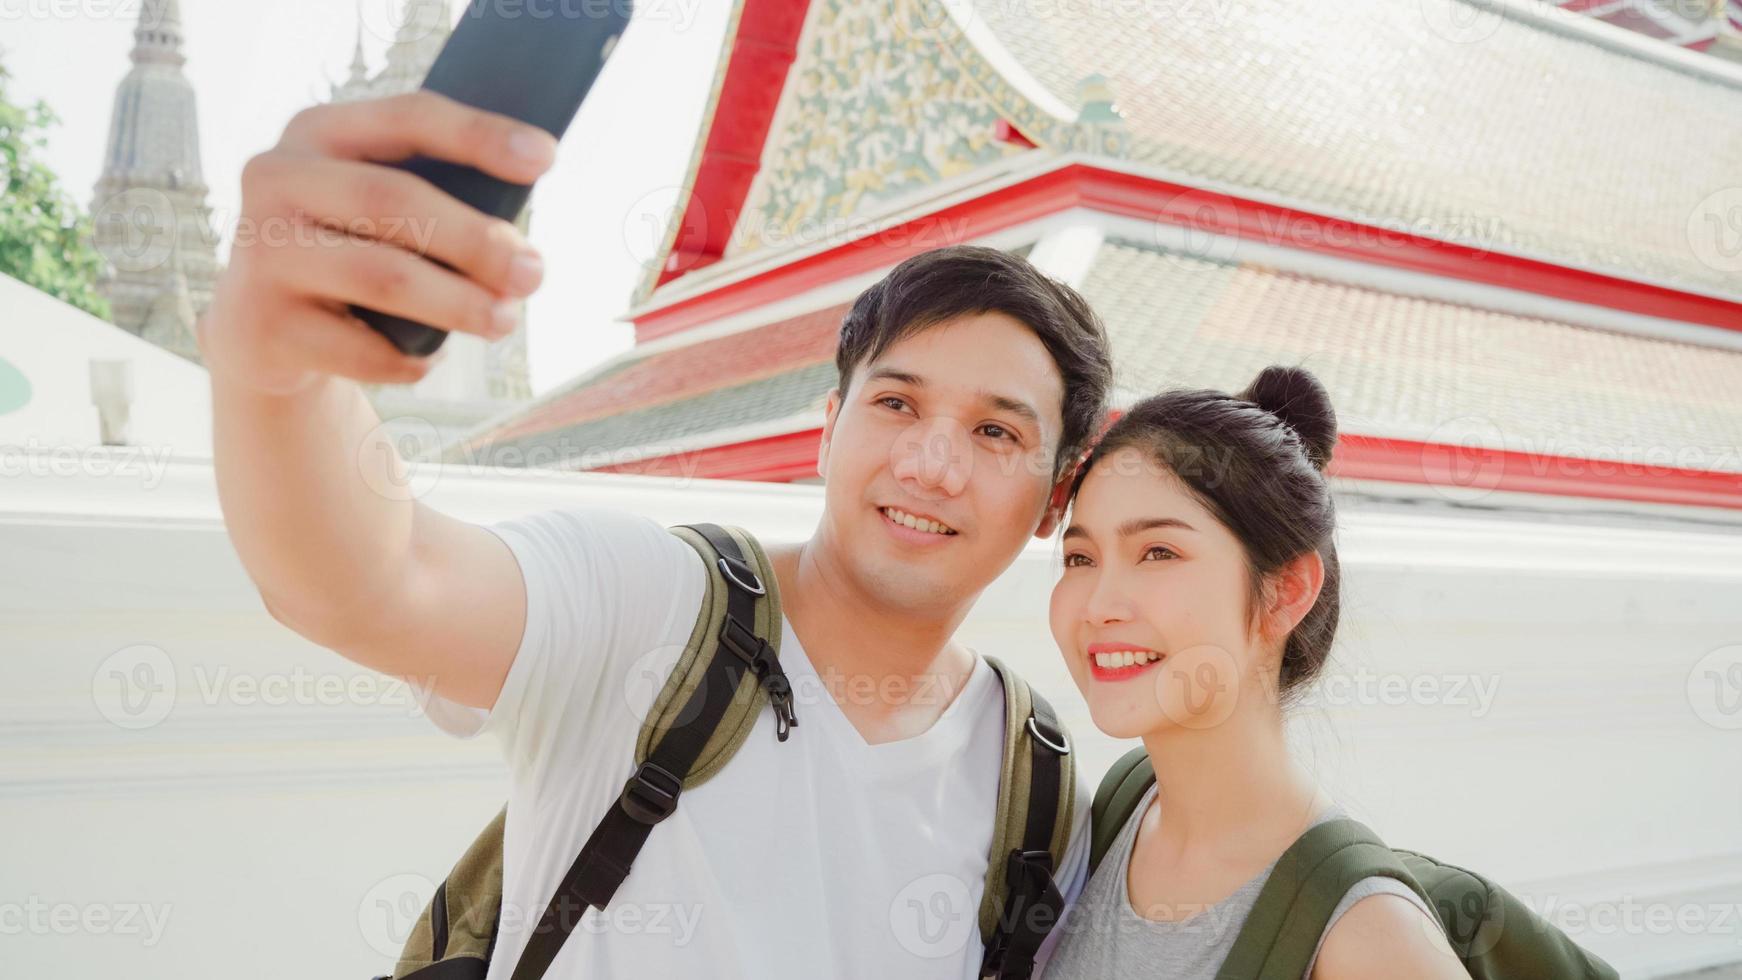 asiatisches bloggerpaar reist in bangkok, thailand, süßes paar, das handy selfie fotoansicht verwendet, während es süße zeit in urlaubsreise bei sonnenuntergang verbringt. paar reisen im stadtkonzept. foto